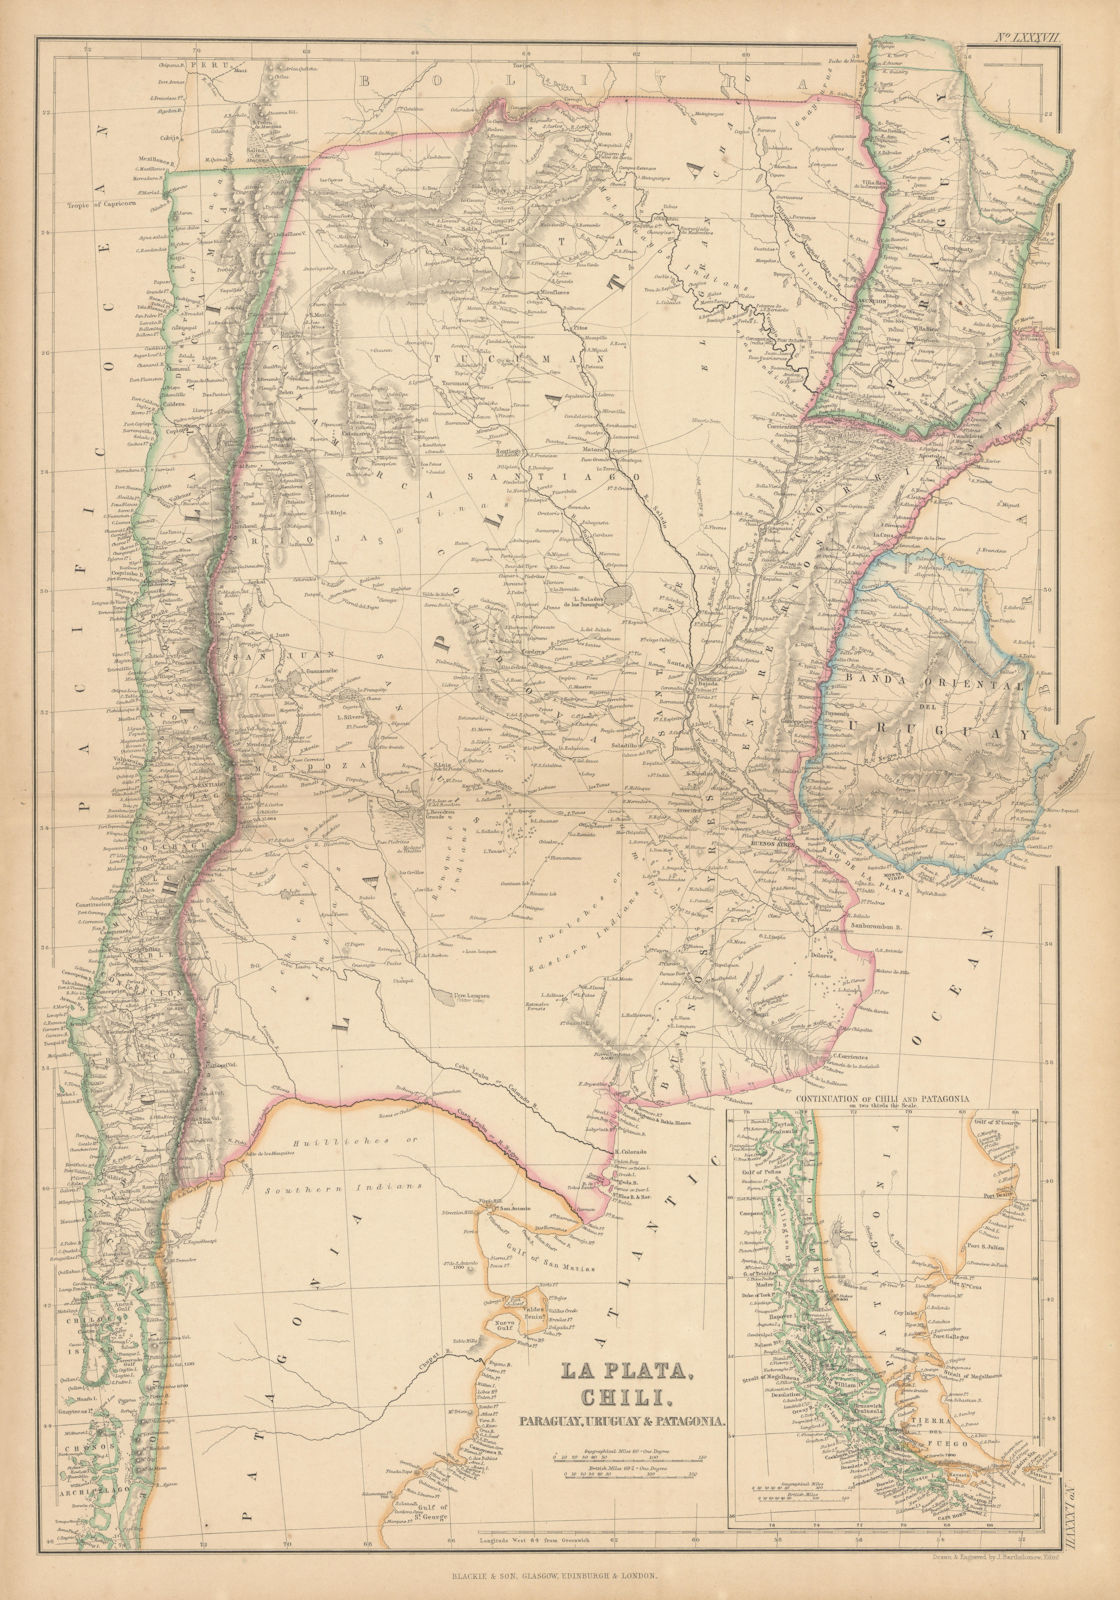 La Plata, Chili, Paraguay, Uruguay… Argentina Chile. BARTHOLOMEW 1859 old map